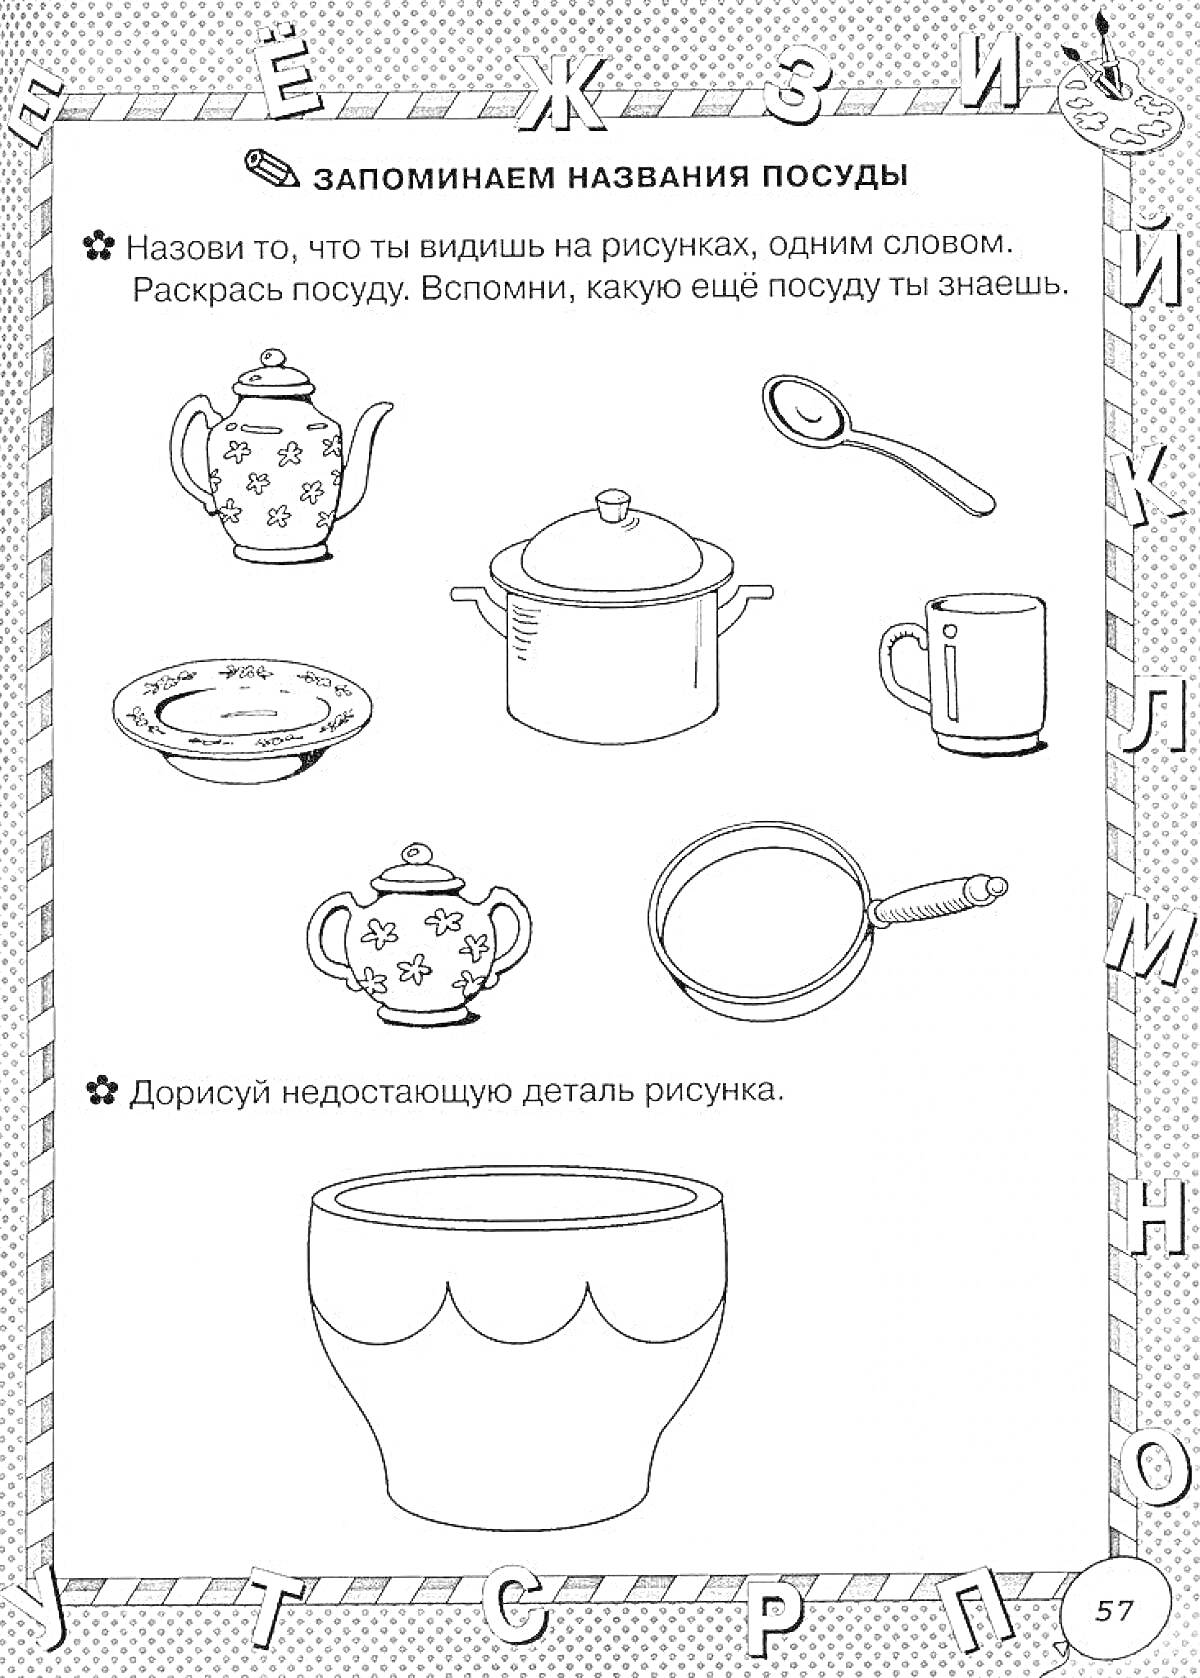 Раскраска выборка посуды с чайником, кастрюлей, ложкой, тарелкой, кружкой, сотейником, чашкой и миской